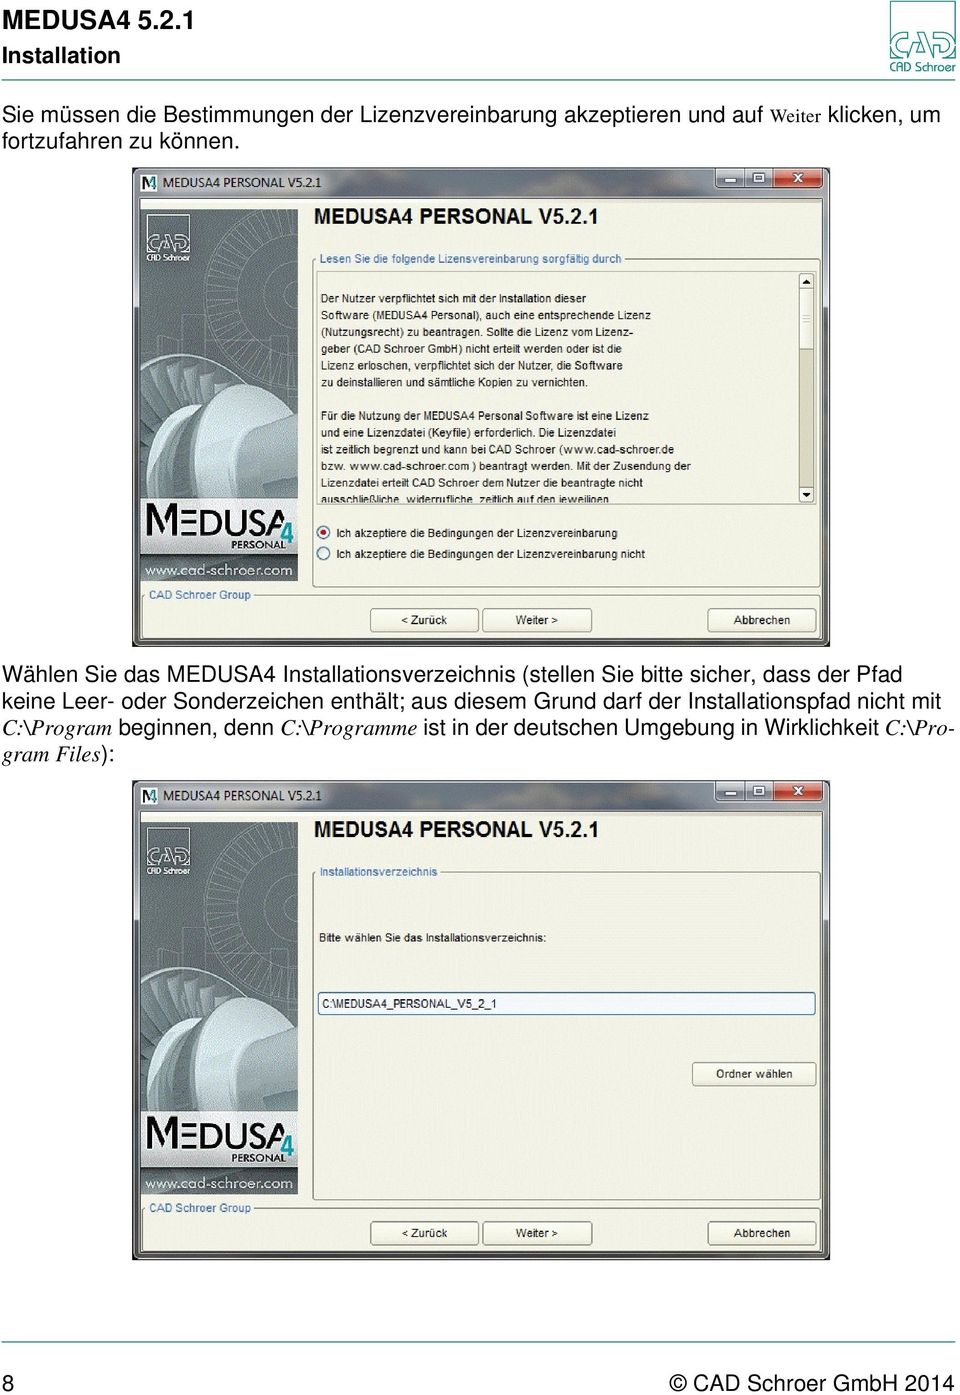 Wählen Sie das MEDUSA4 Installationsverzeichnis (stellen Sie bitte sicher, dass der Pfad keine Leer- oder